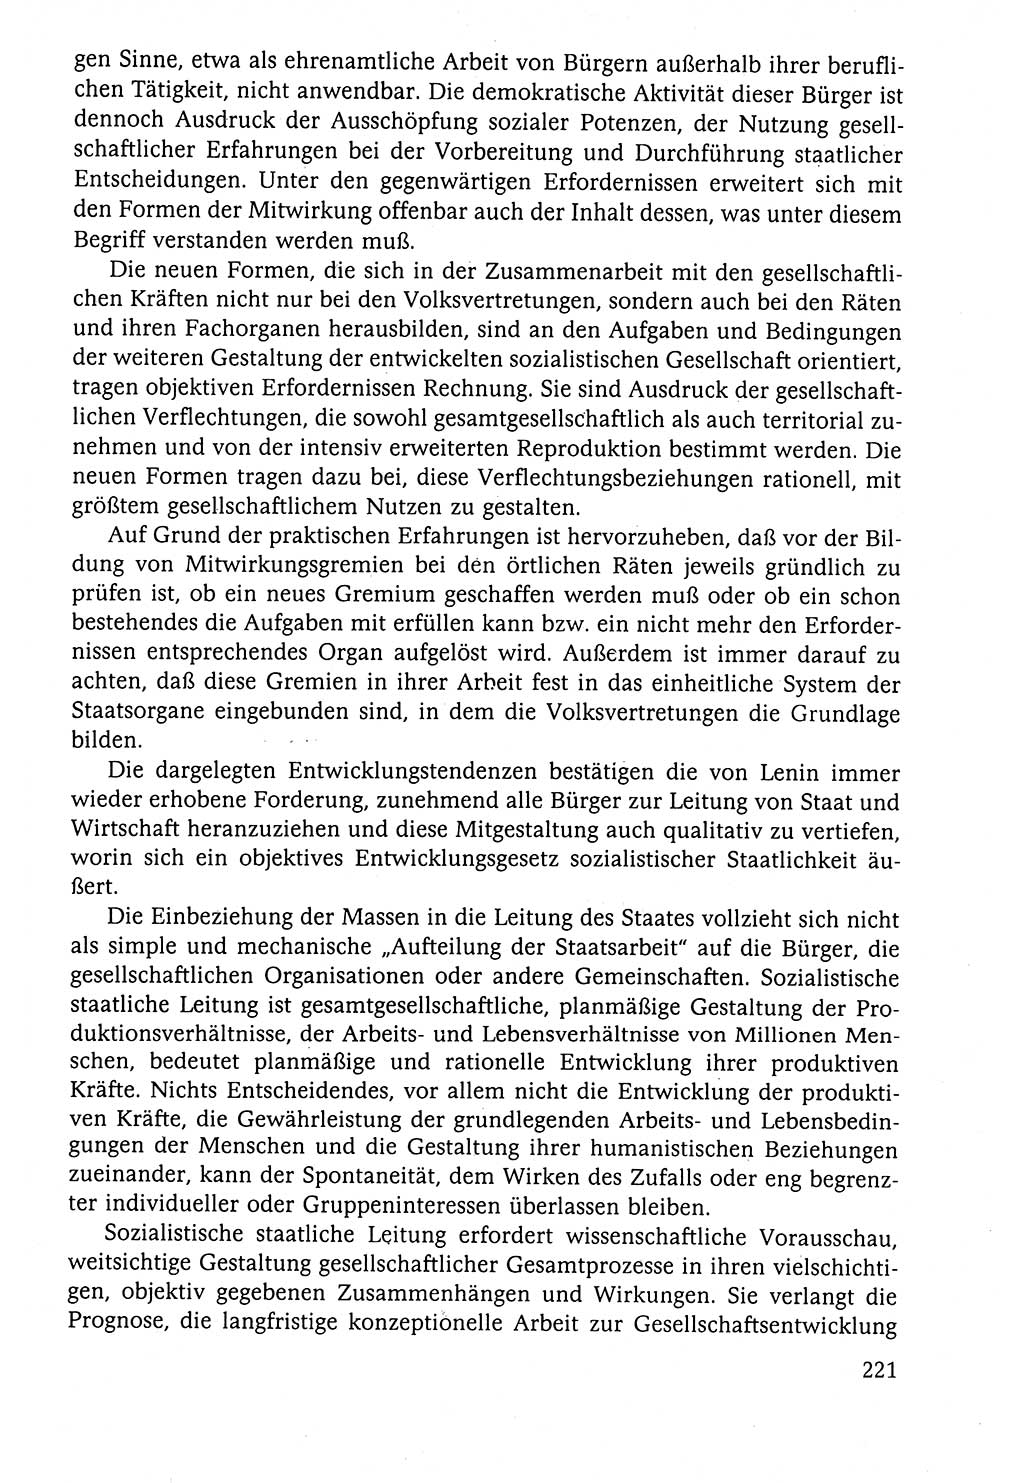 Der Staat im politischen System der DDR (Deutsche Demokratische Republik) 1986, Seite 221 (St. pol. Sys. DDR 1986, S. 221)